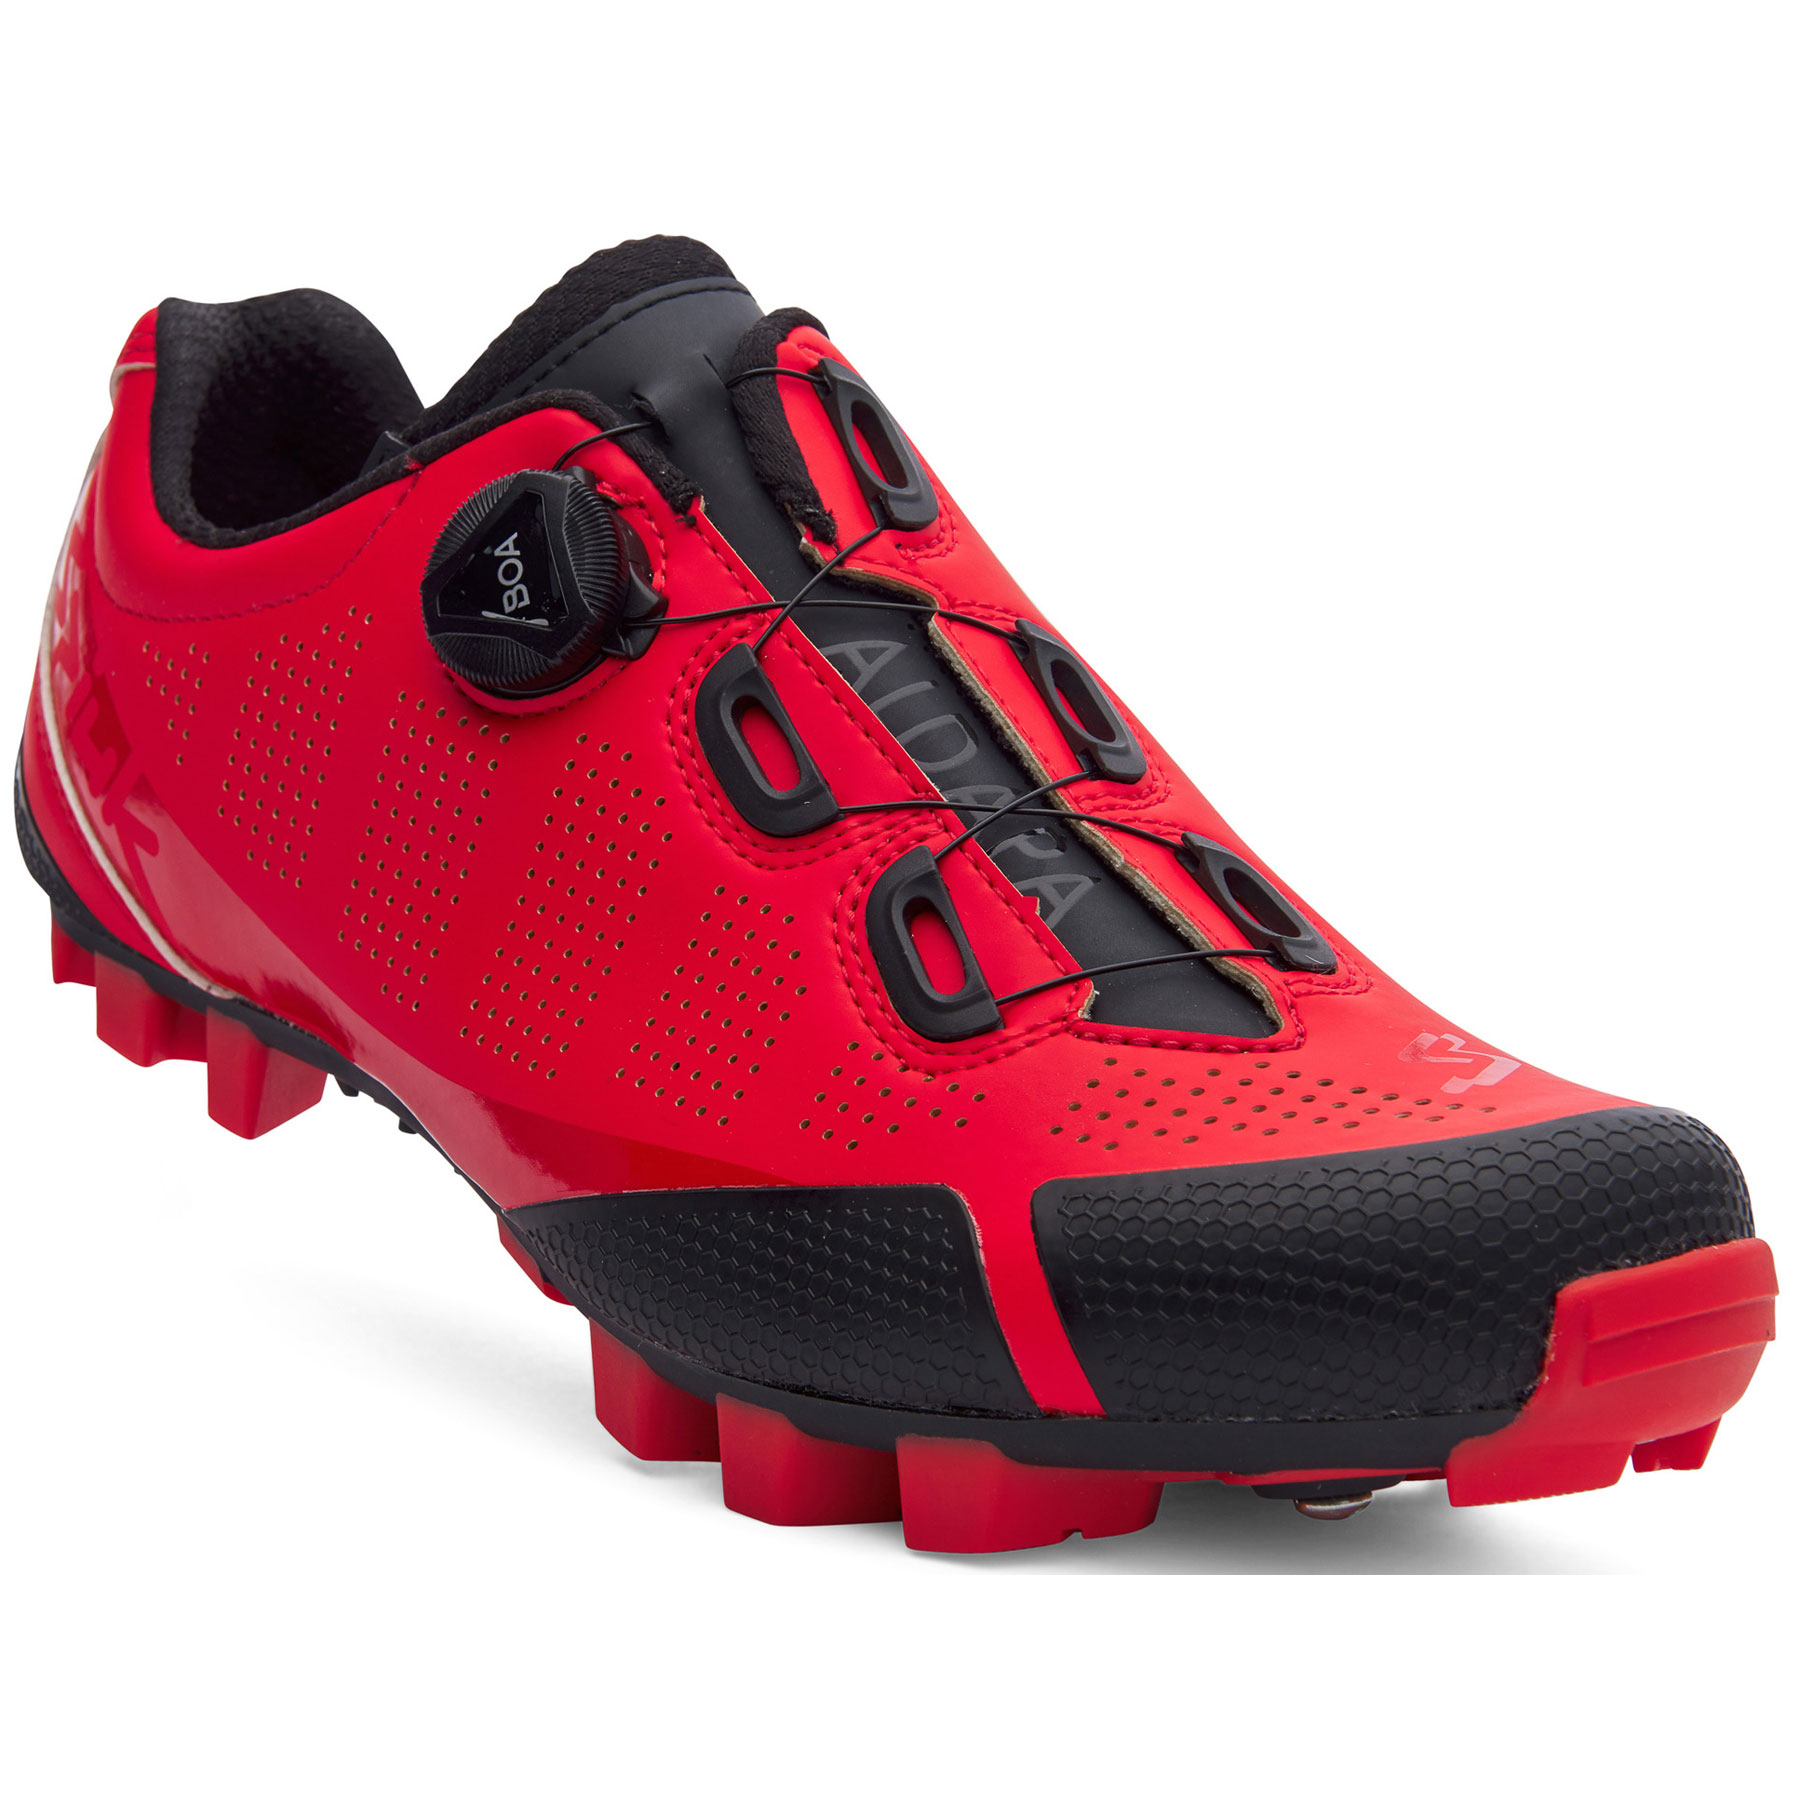 Productfoto van Spiuk Aldapa MTB Shoes - red matt